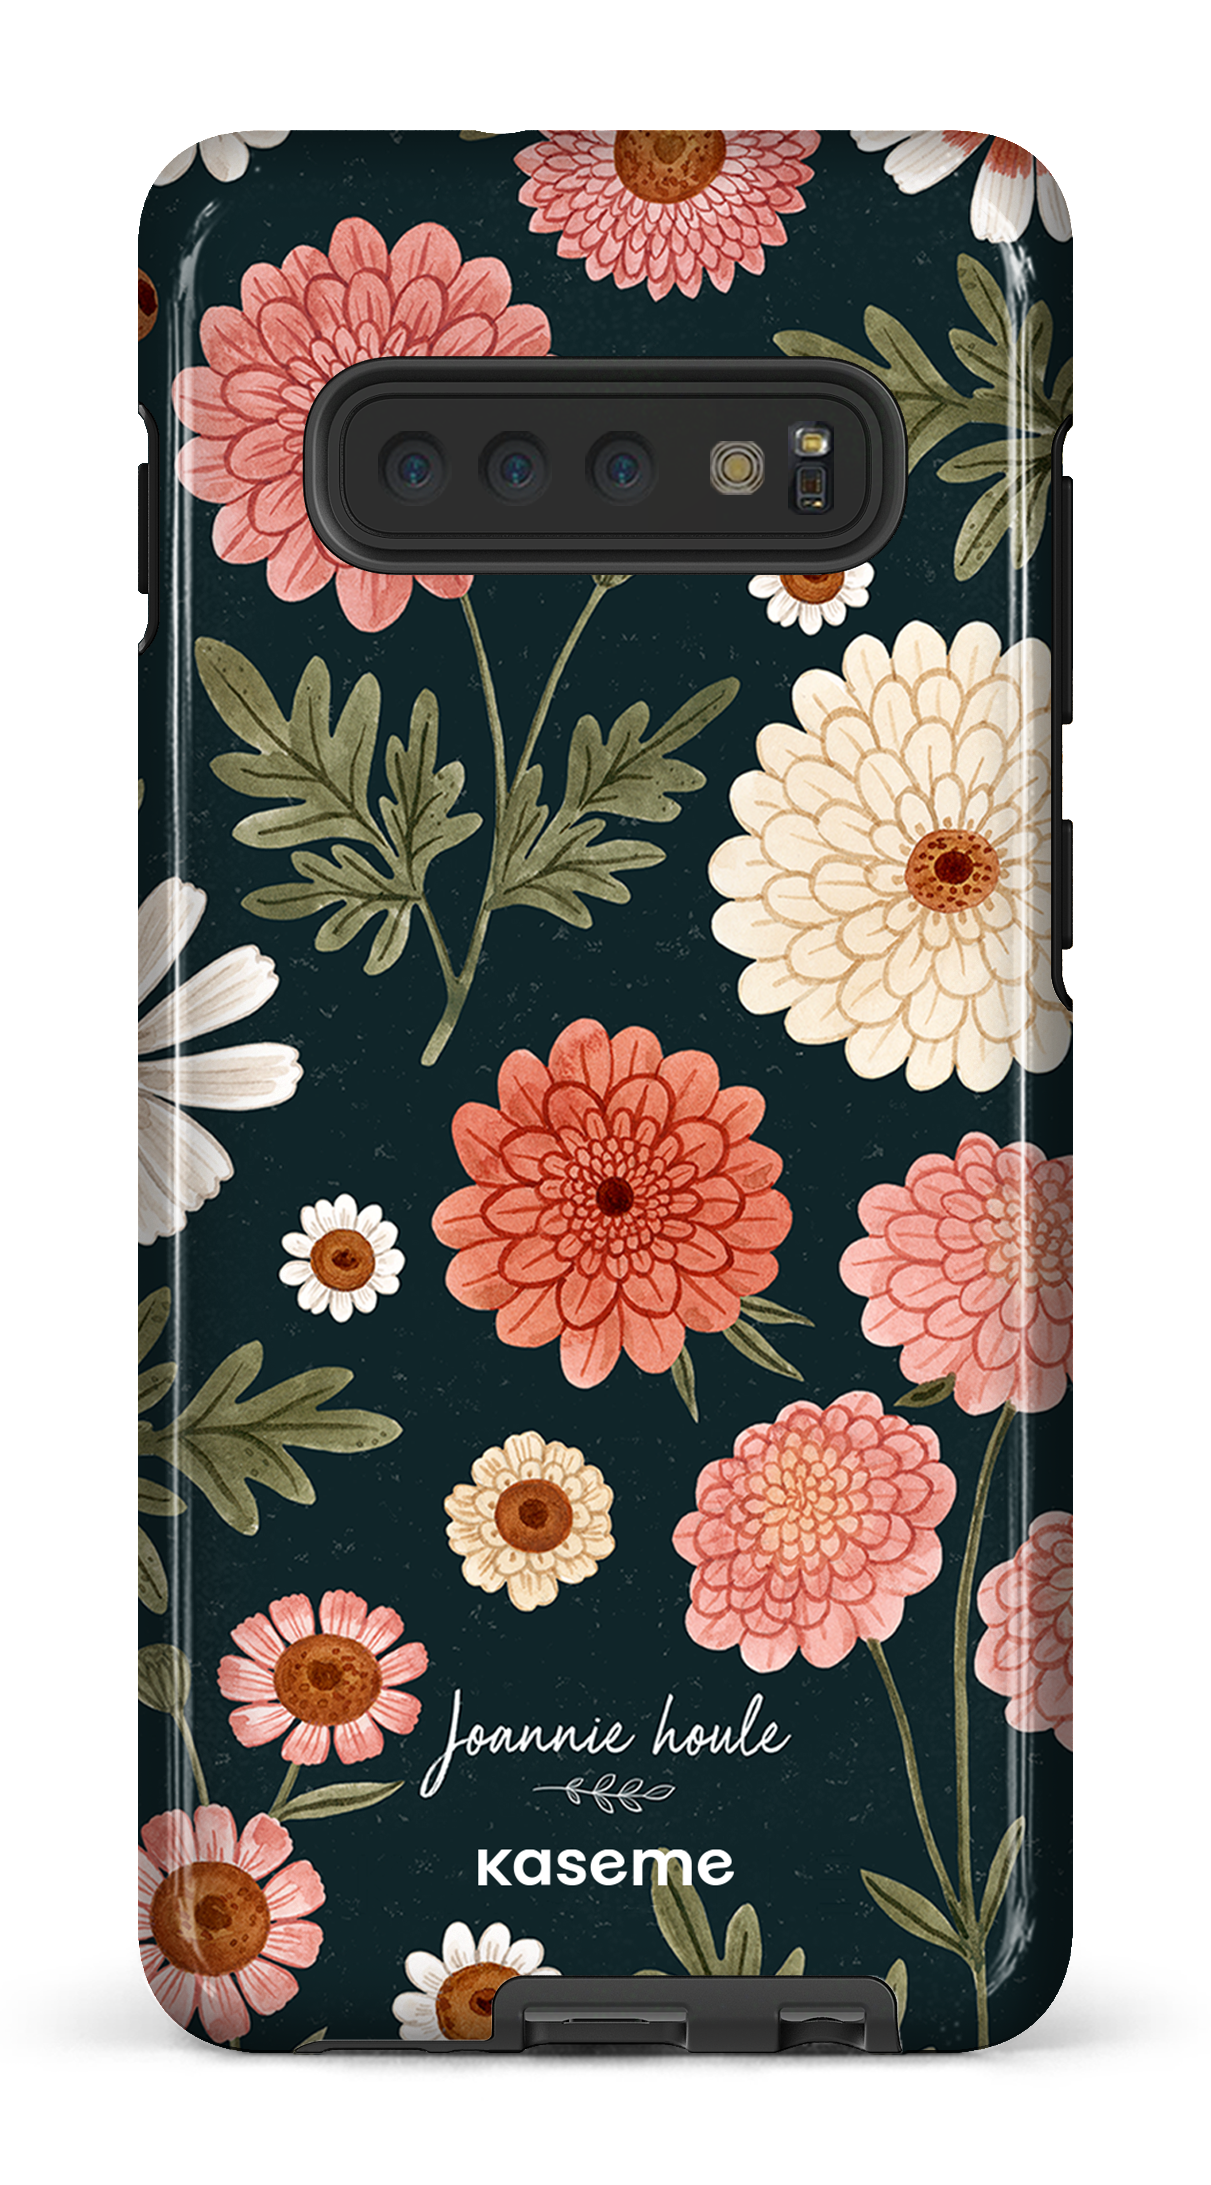 Chrysanthemums by Joannie Houle - Galaxy S10 Plus